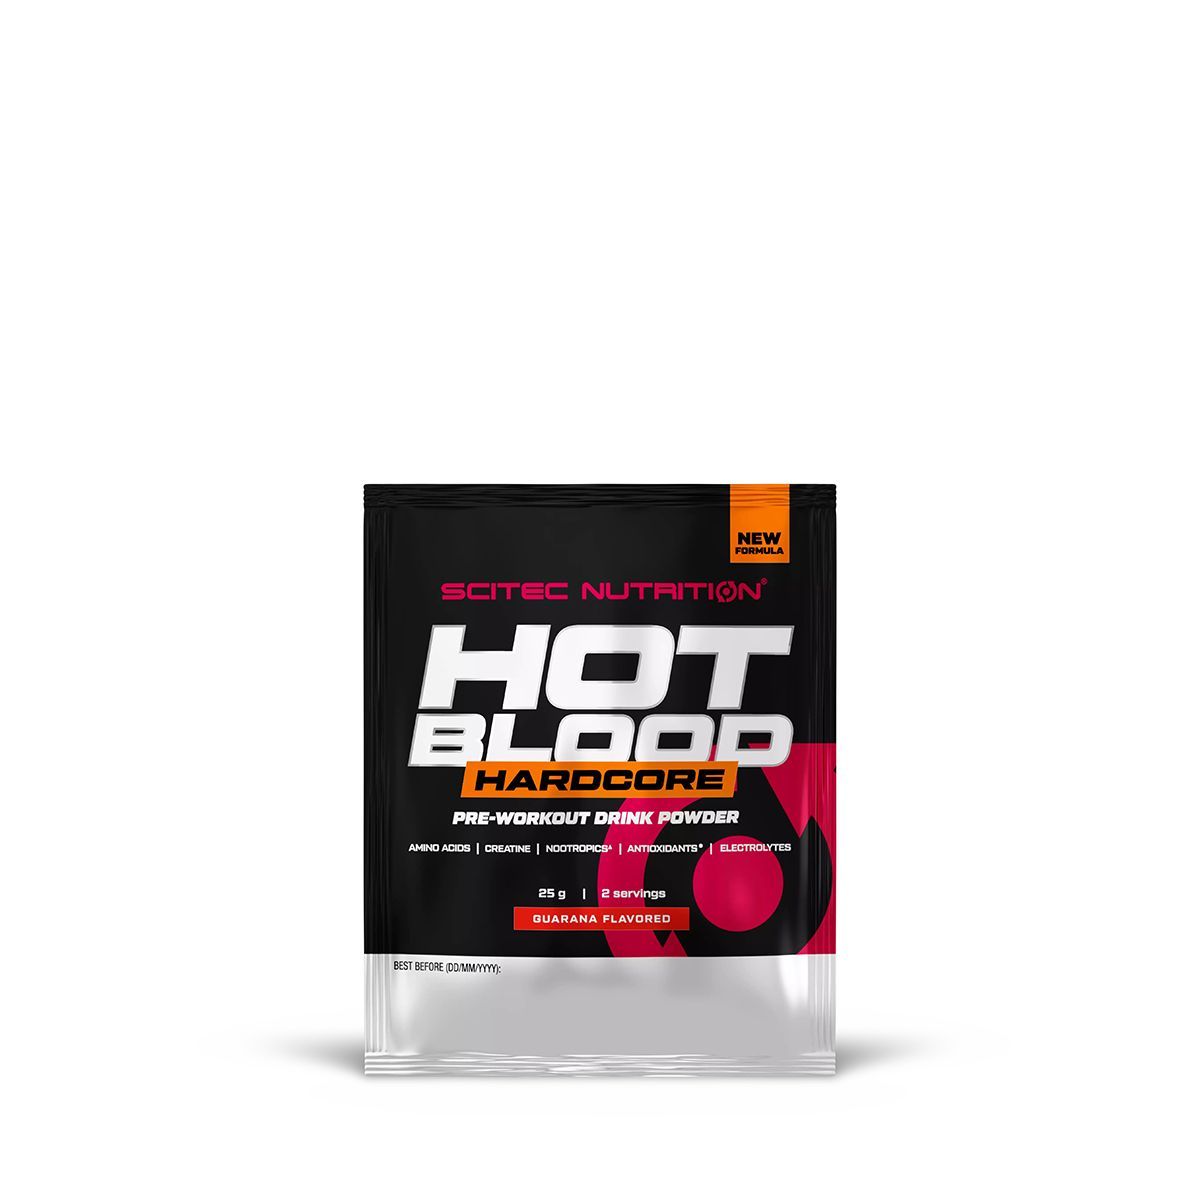 Scitec Nutrition - Hot Blood Hardcore - Complex Pre-workout Stimulant - 25g